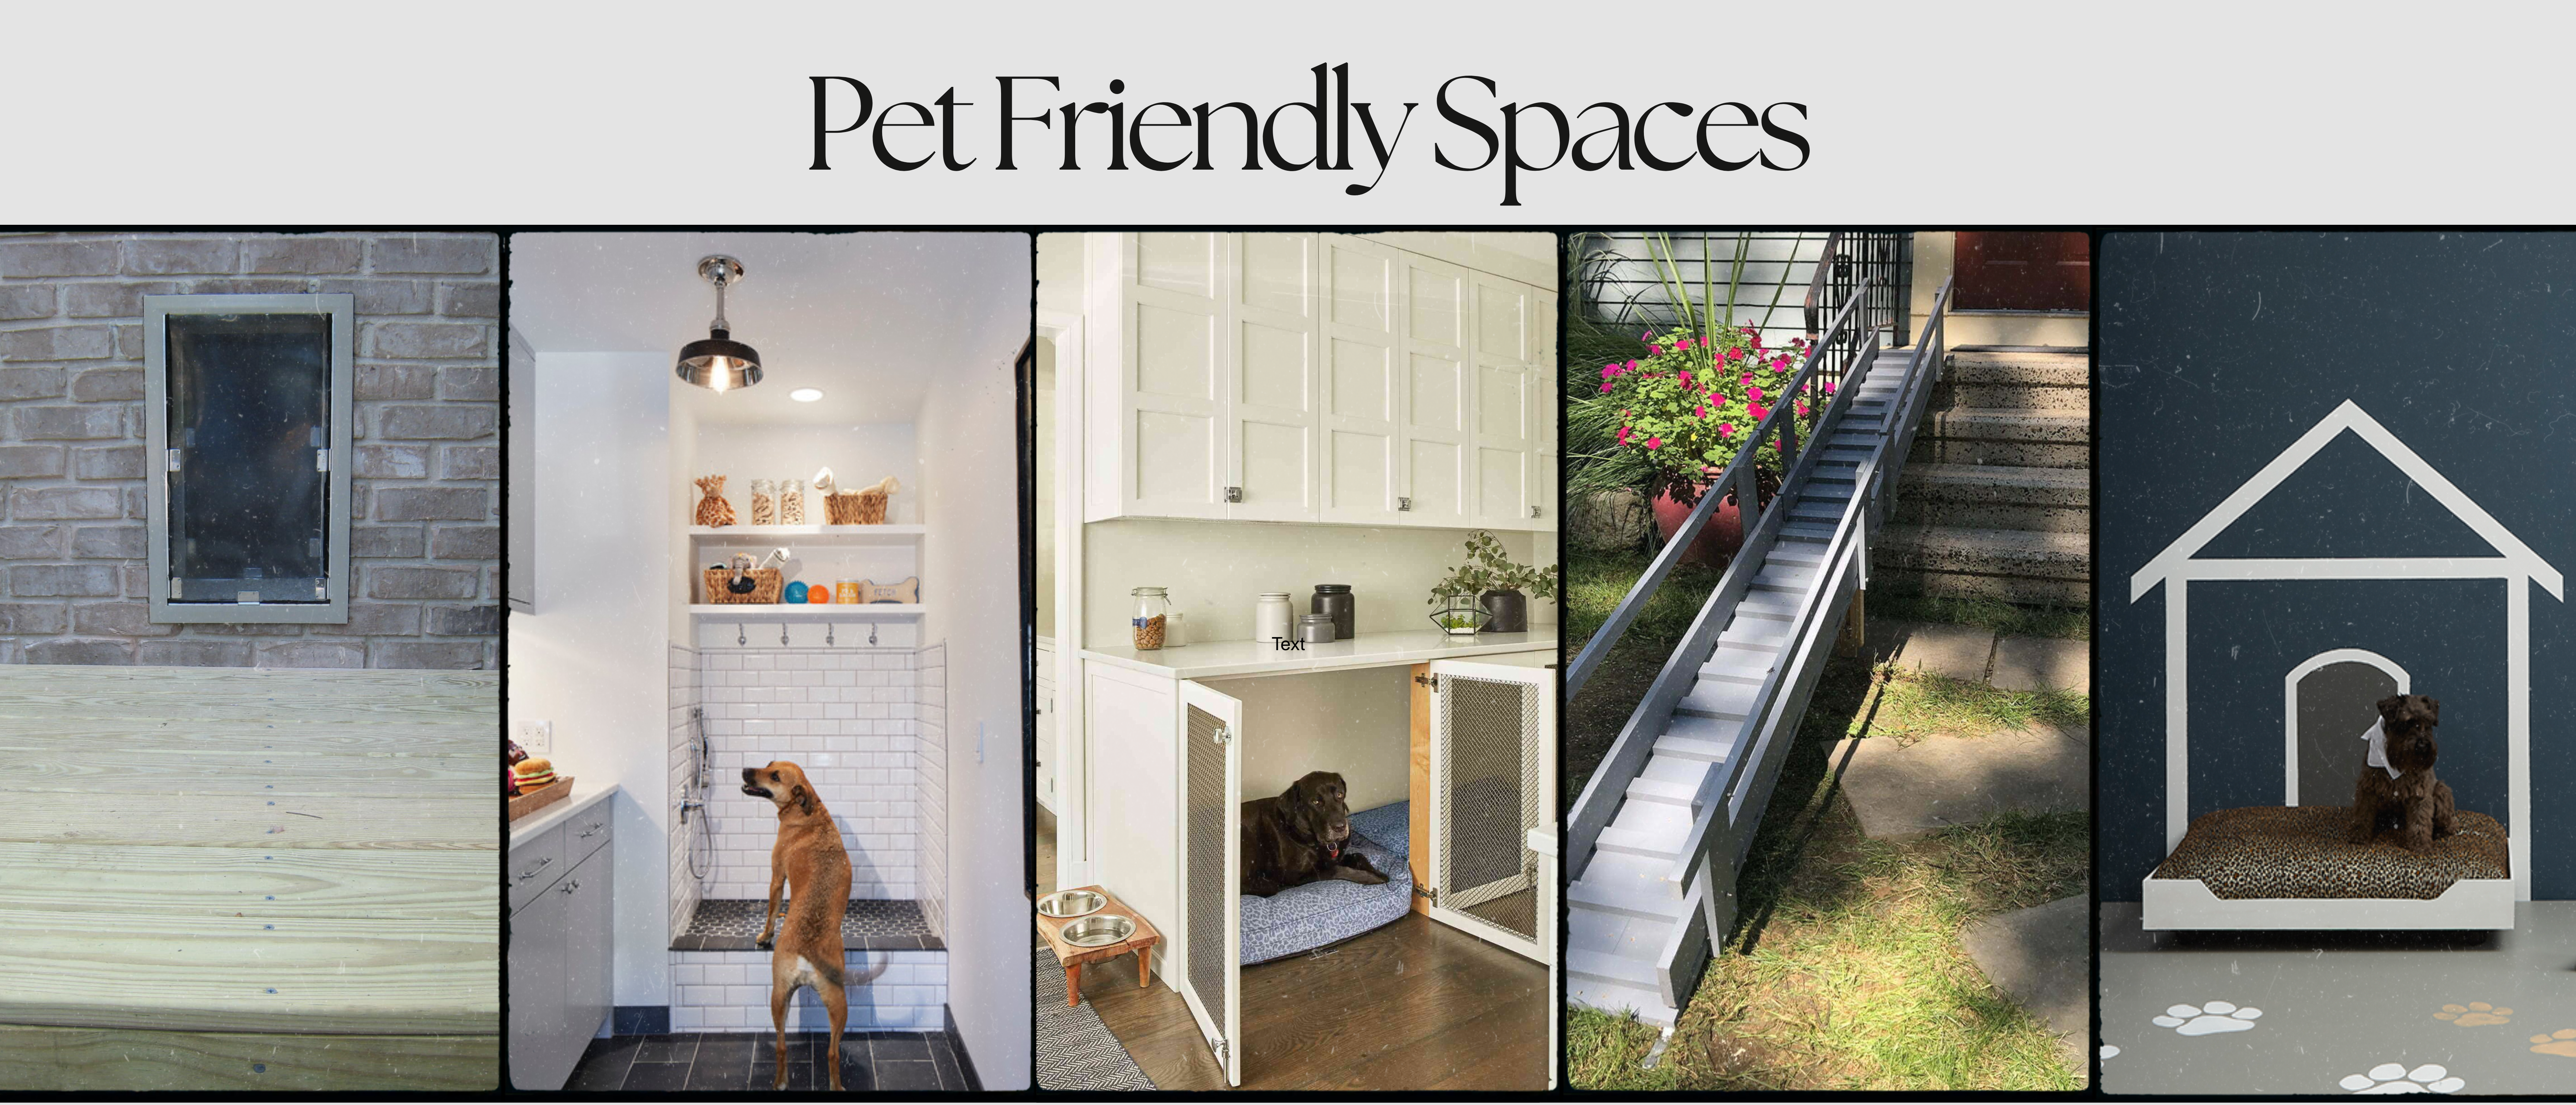 Pet Friendly Spaces-1